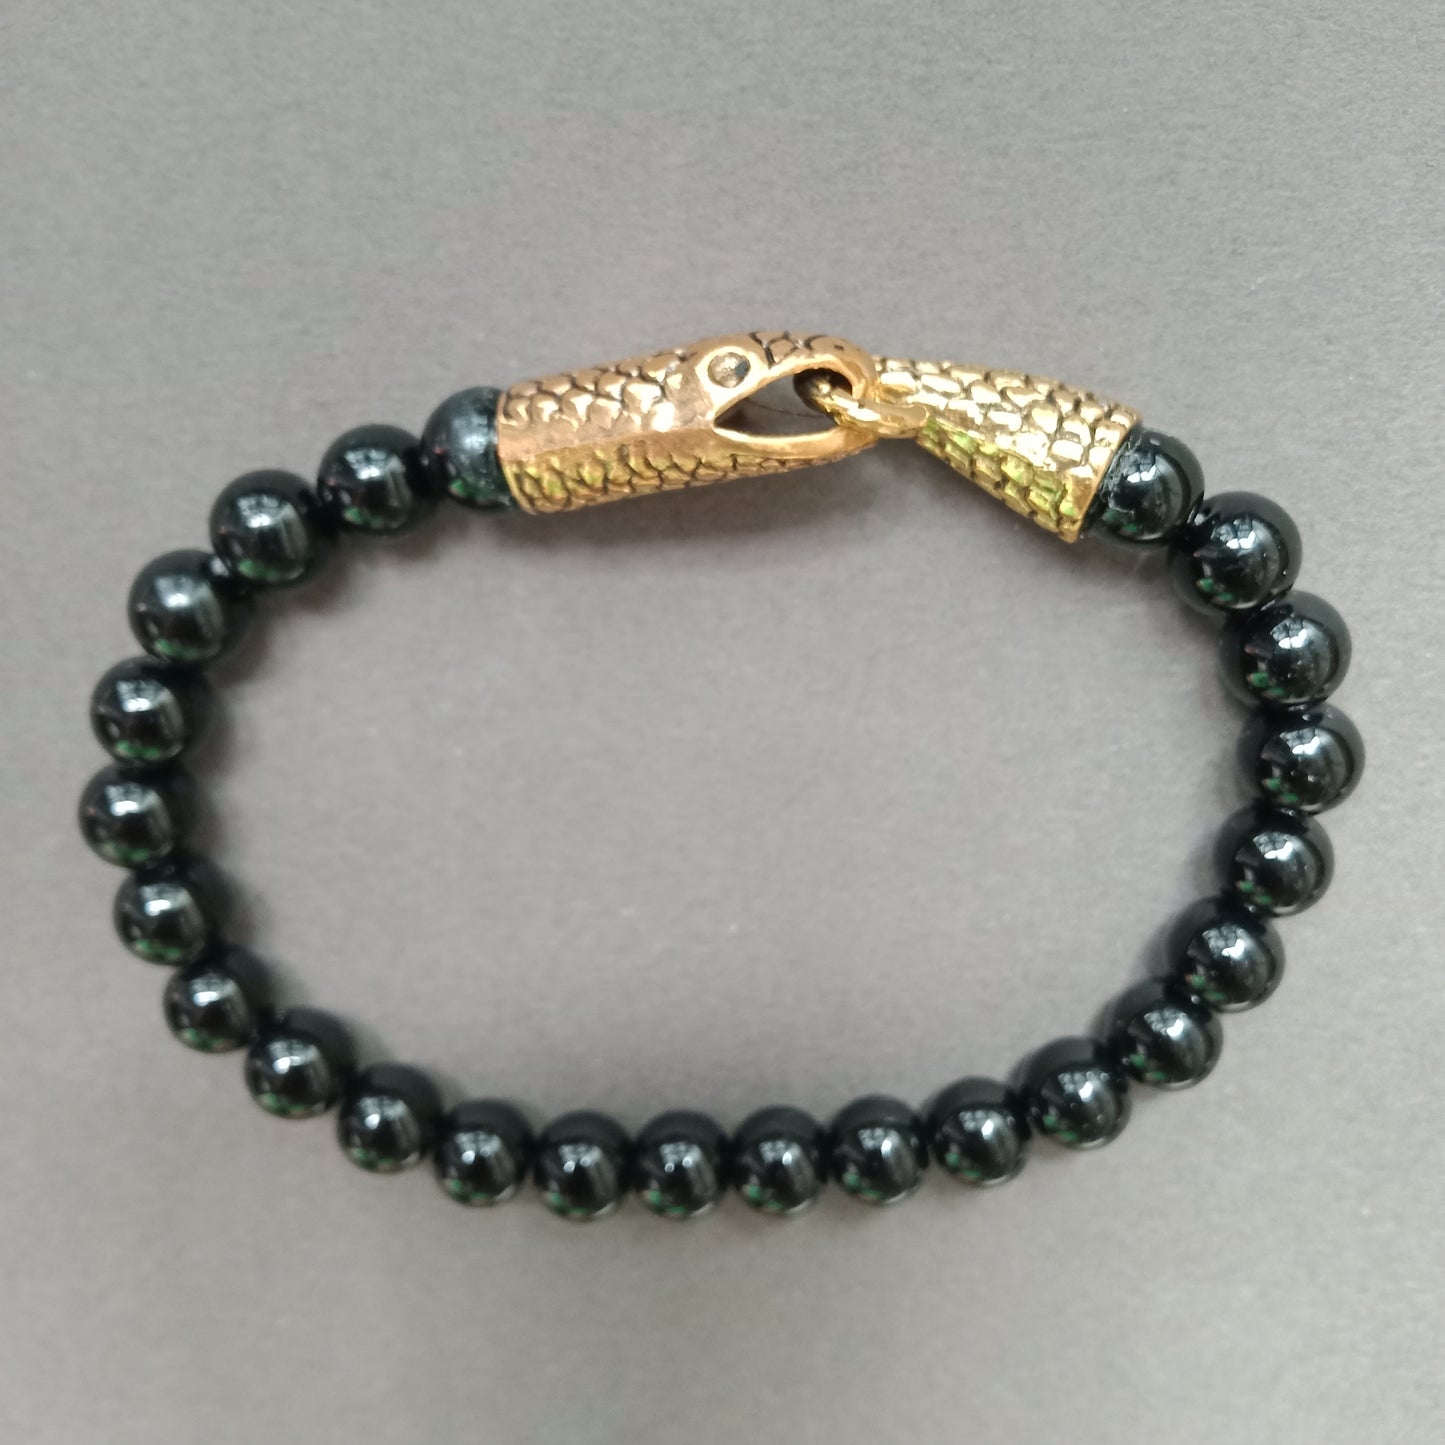 Ouroboros onyx bracelet